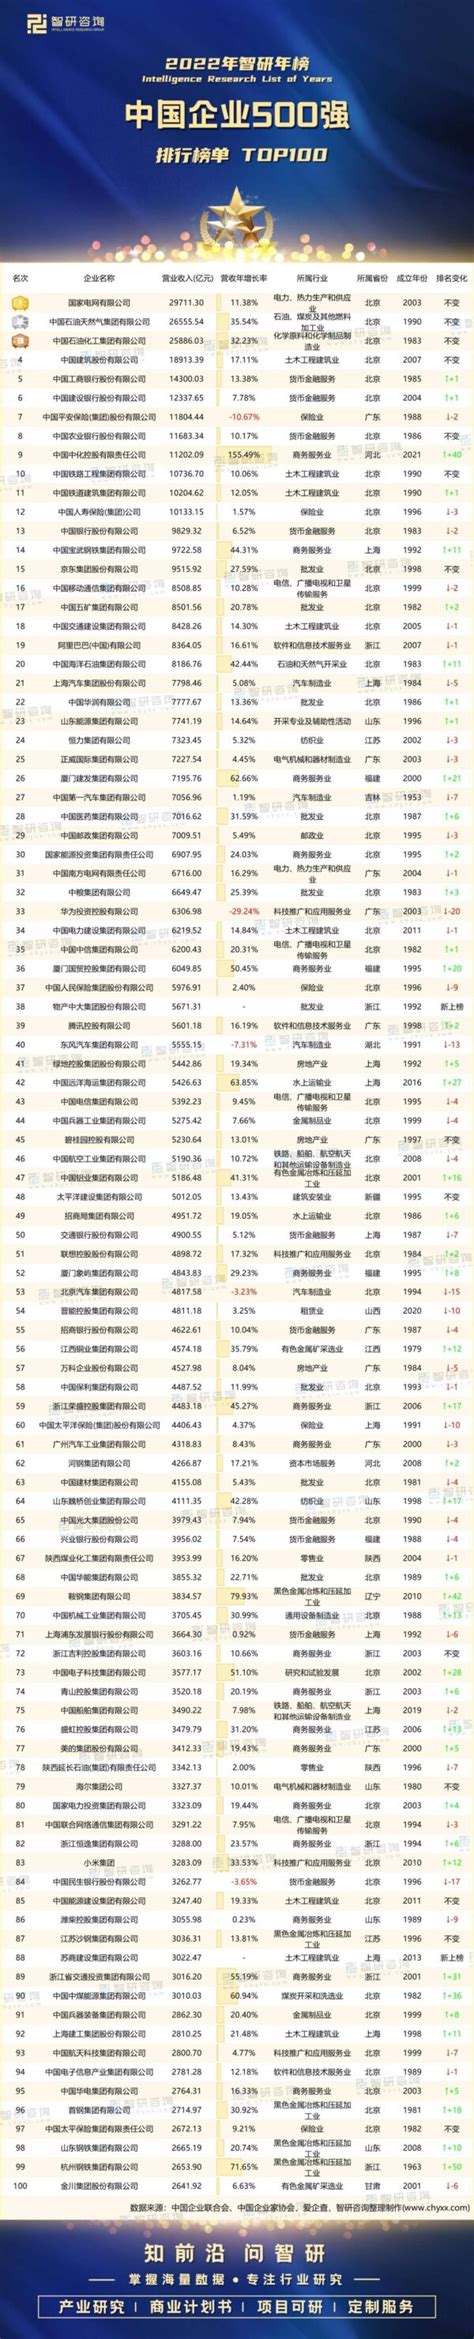 中国国有企业排行榜_排行榜显示国企仍为中国绝对纳税大户(3)_中国排行网